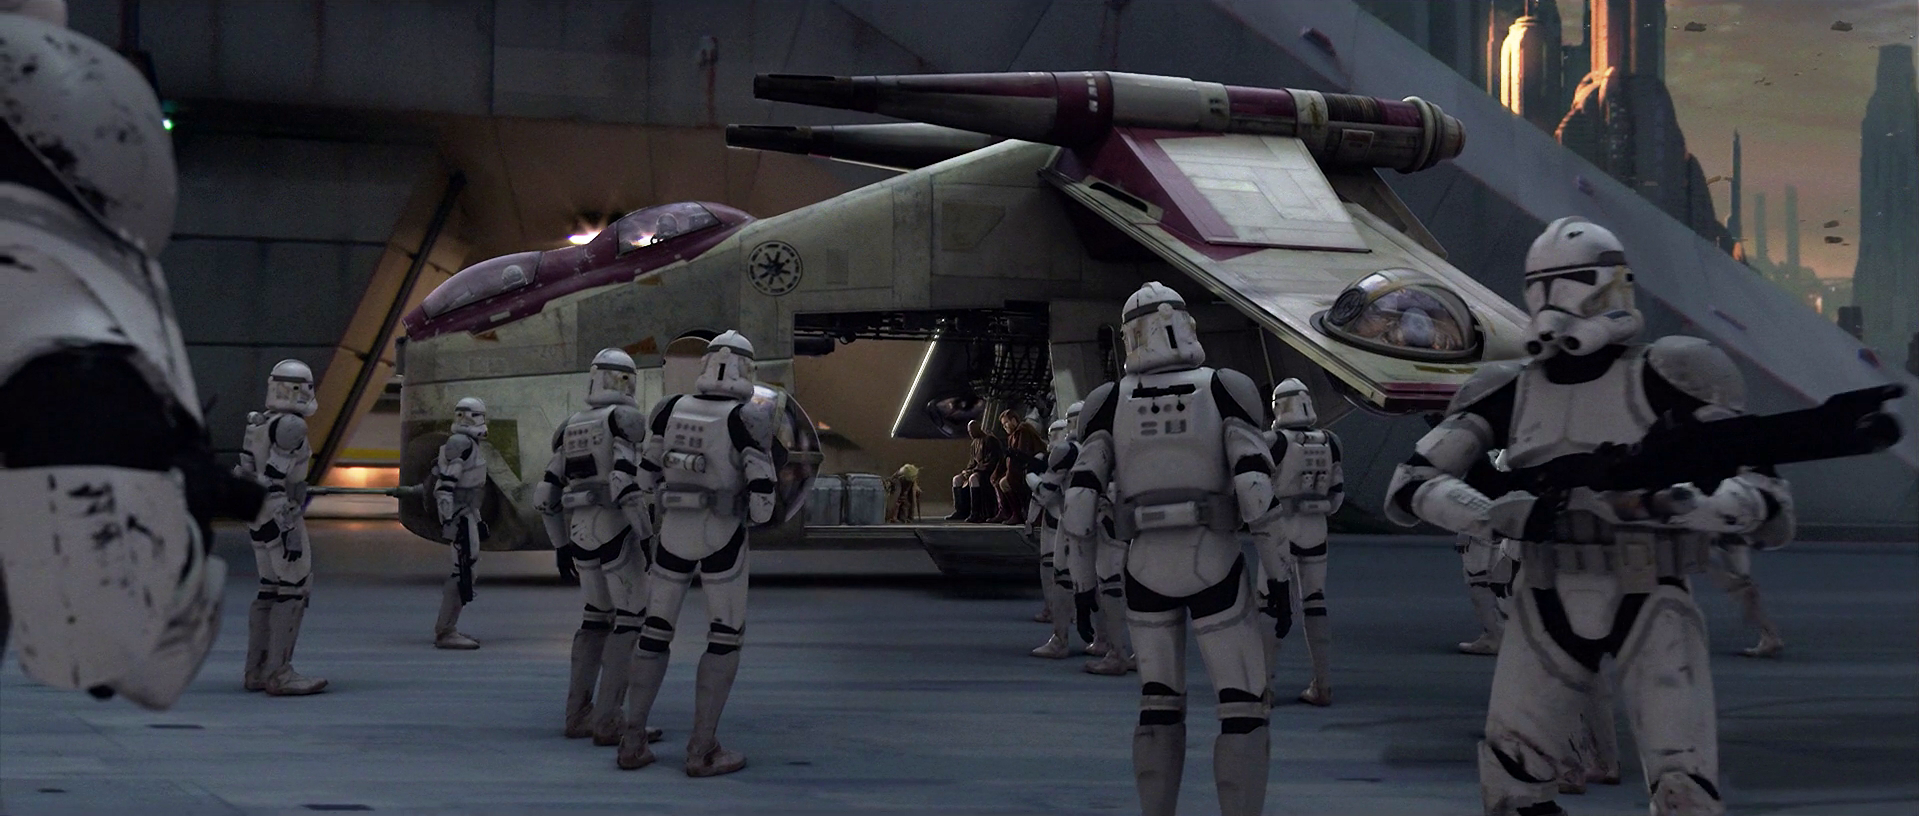 star wars 41st clone trooper